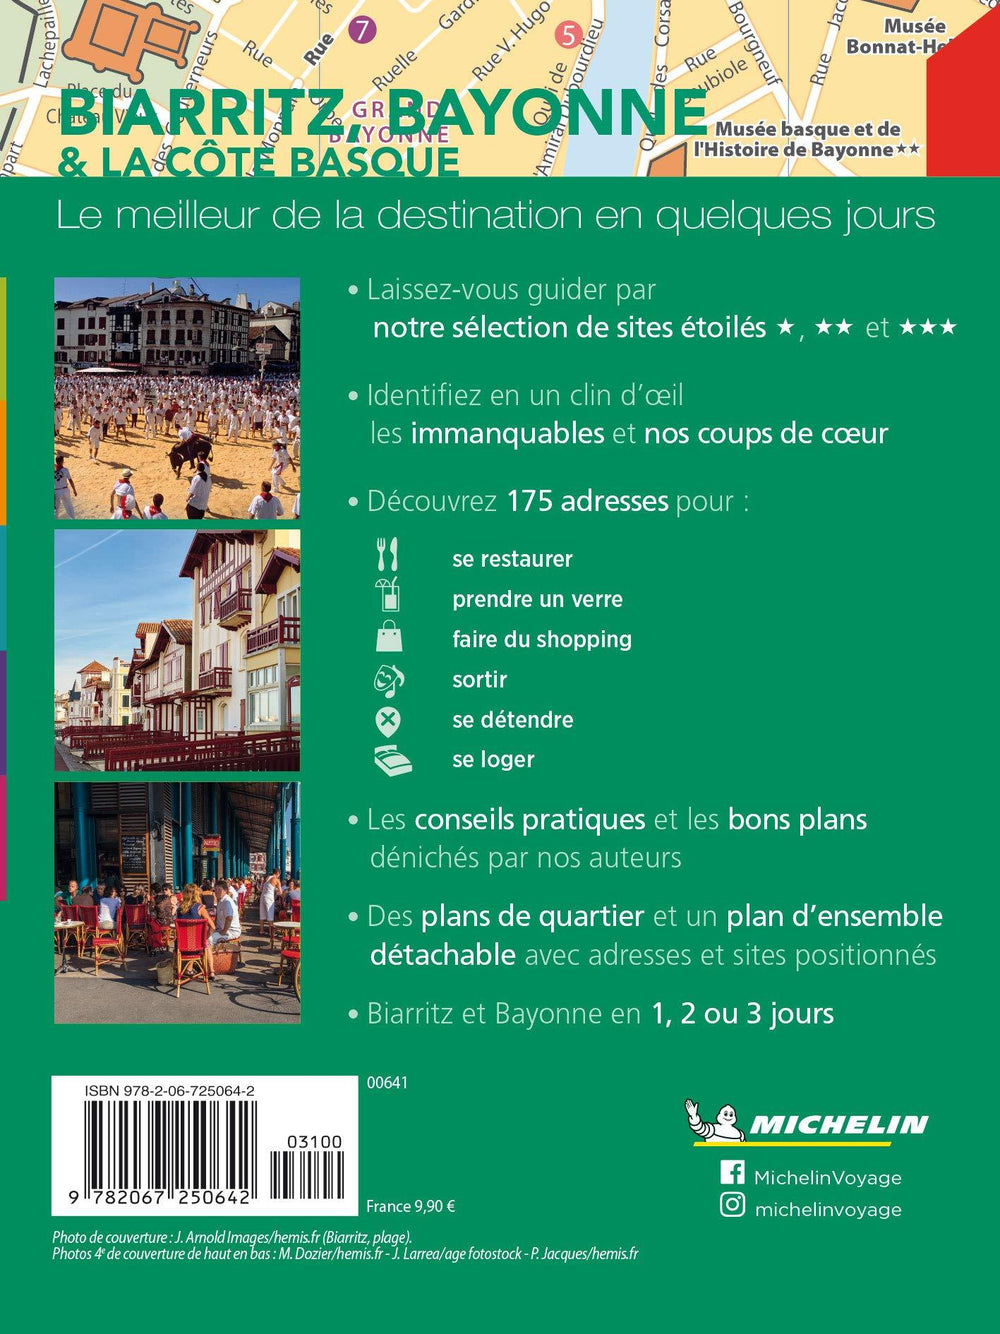 Guide Vert Week & GO - Biarritz, Bayonne et la côte basque - Édition 2021 | Michelin guide de voyage Michelin 